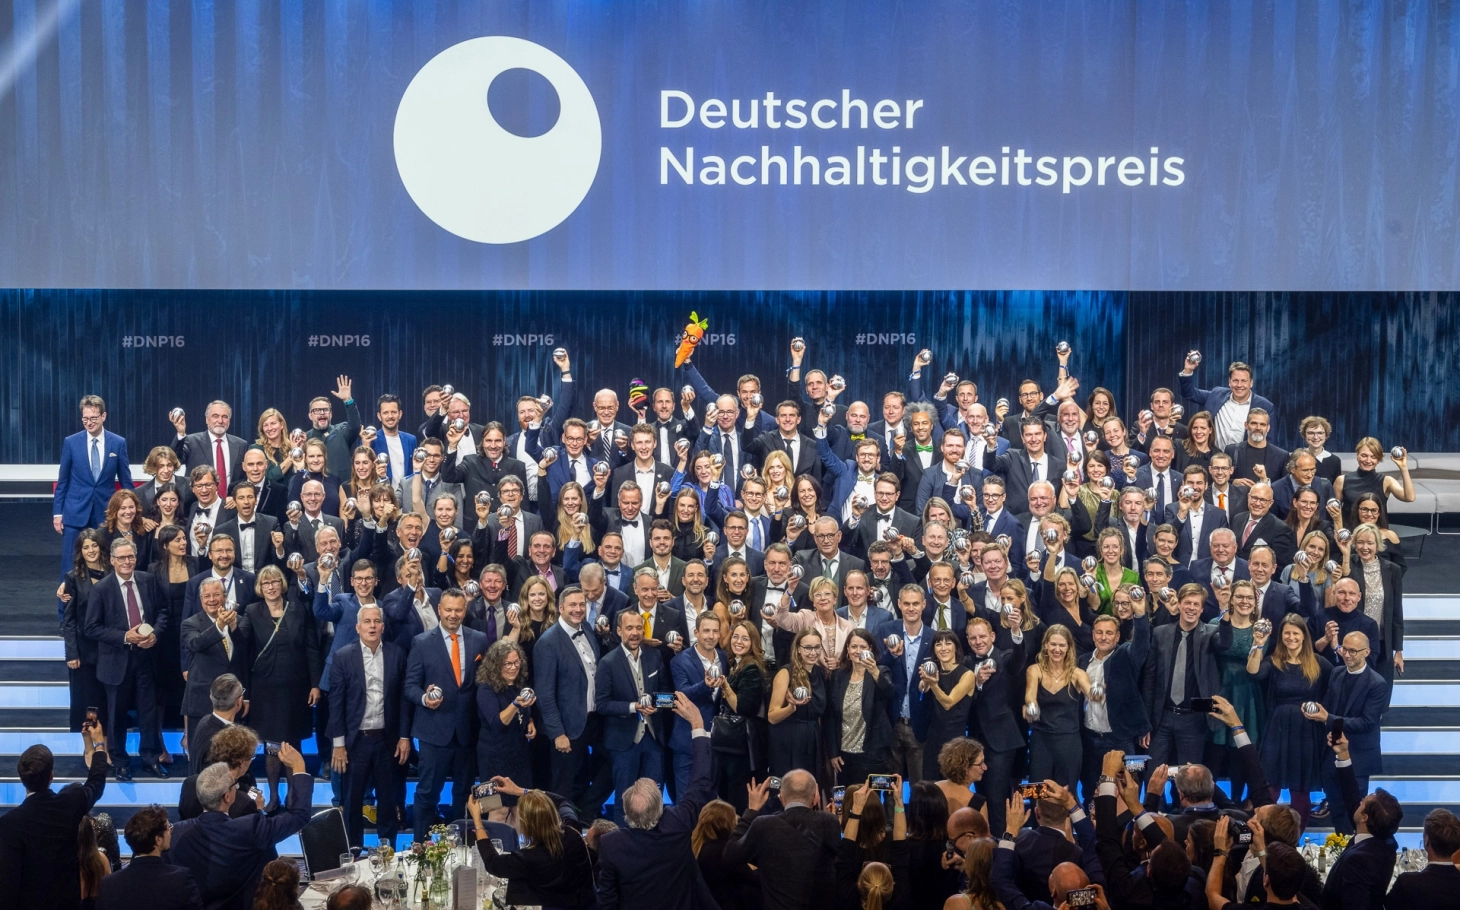 Die Gewinner des deutschern Nachhaltigkeitspreises stellen sich zum gemeinsamen Gruppenfoto auf. Über 100 Unternehmen wurden ausgezeichnet.